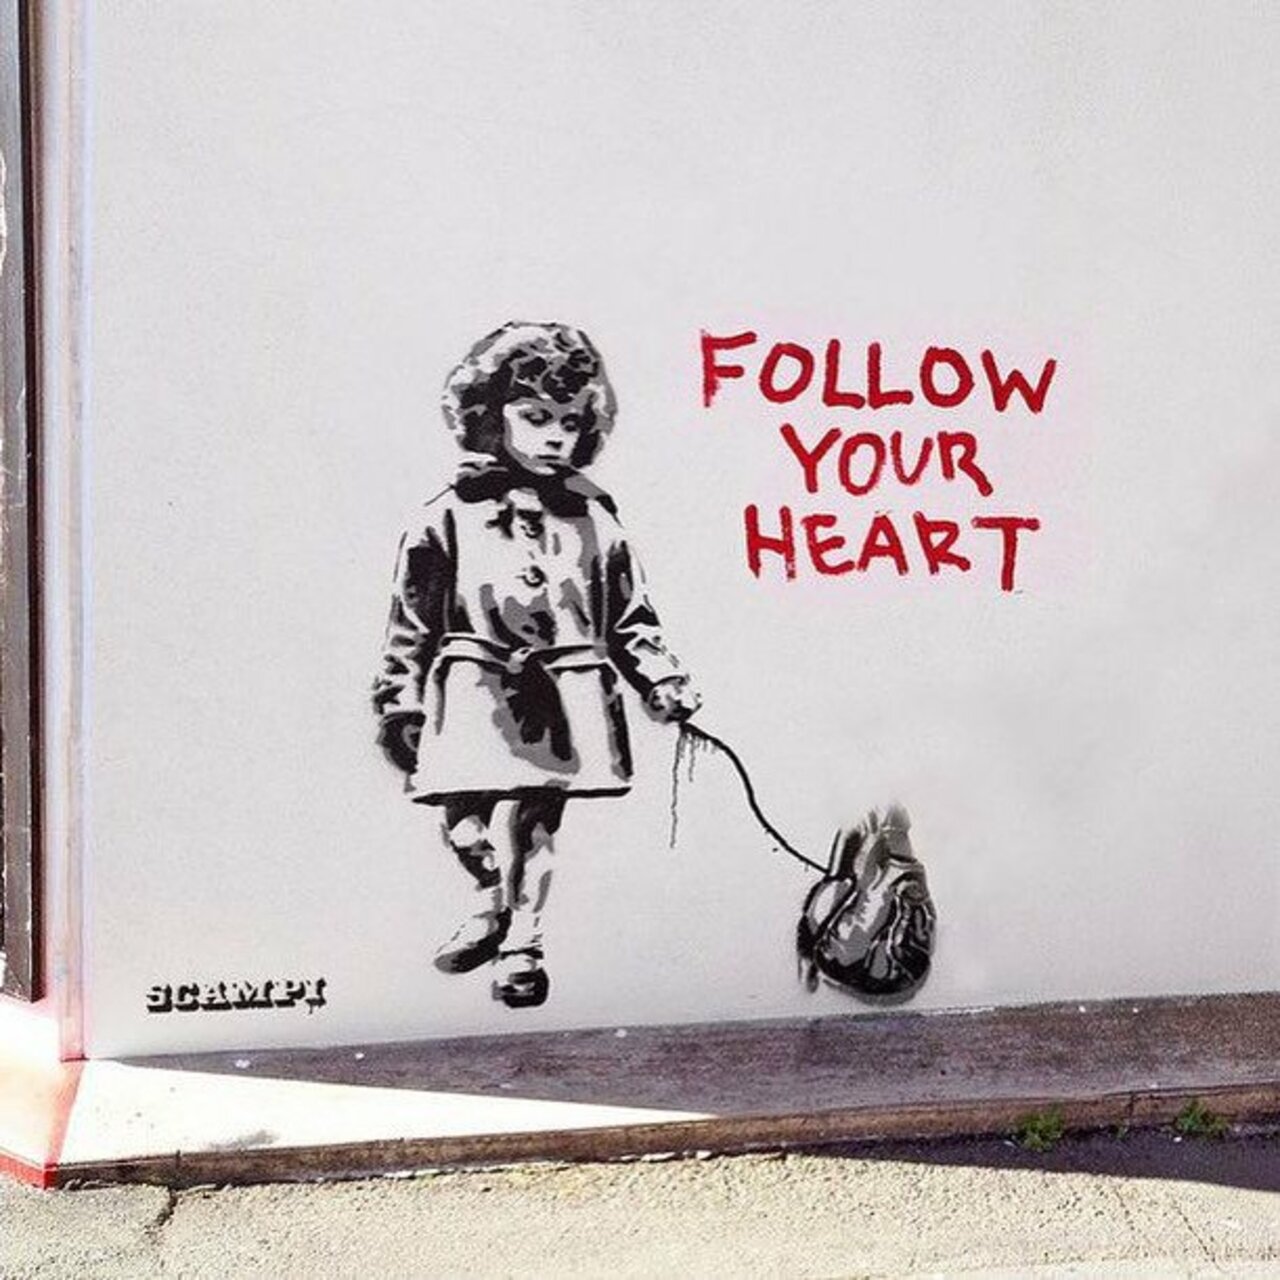 #Paris #graffiti photo by @stefetlinda http://ift.tt/1GC4Fkc #StreetArt https://t.co/zwBGXoerTQ